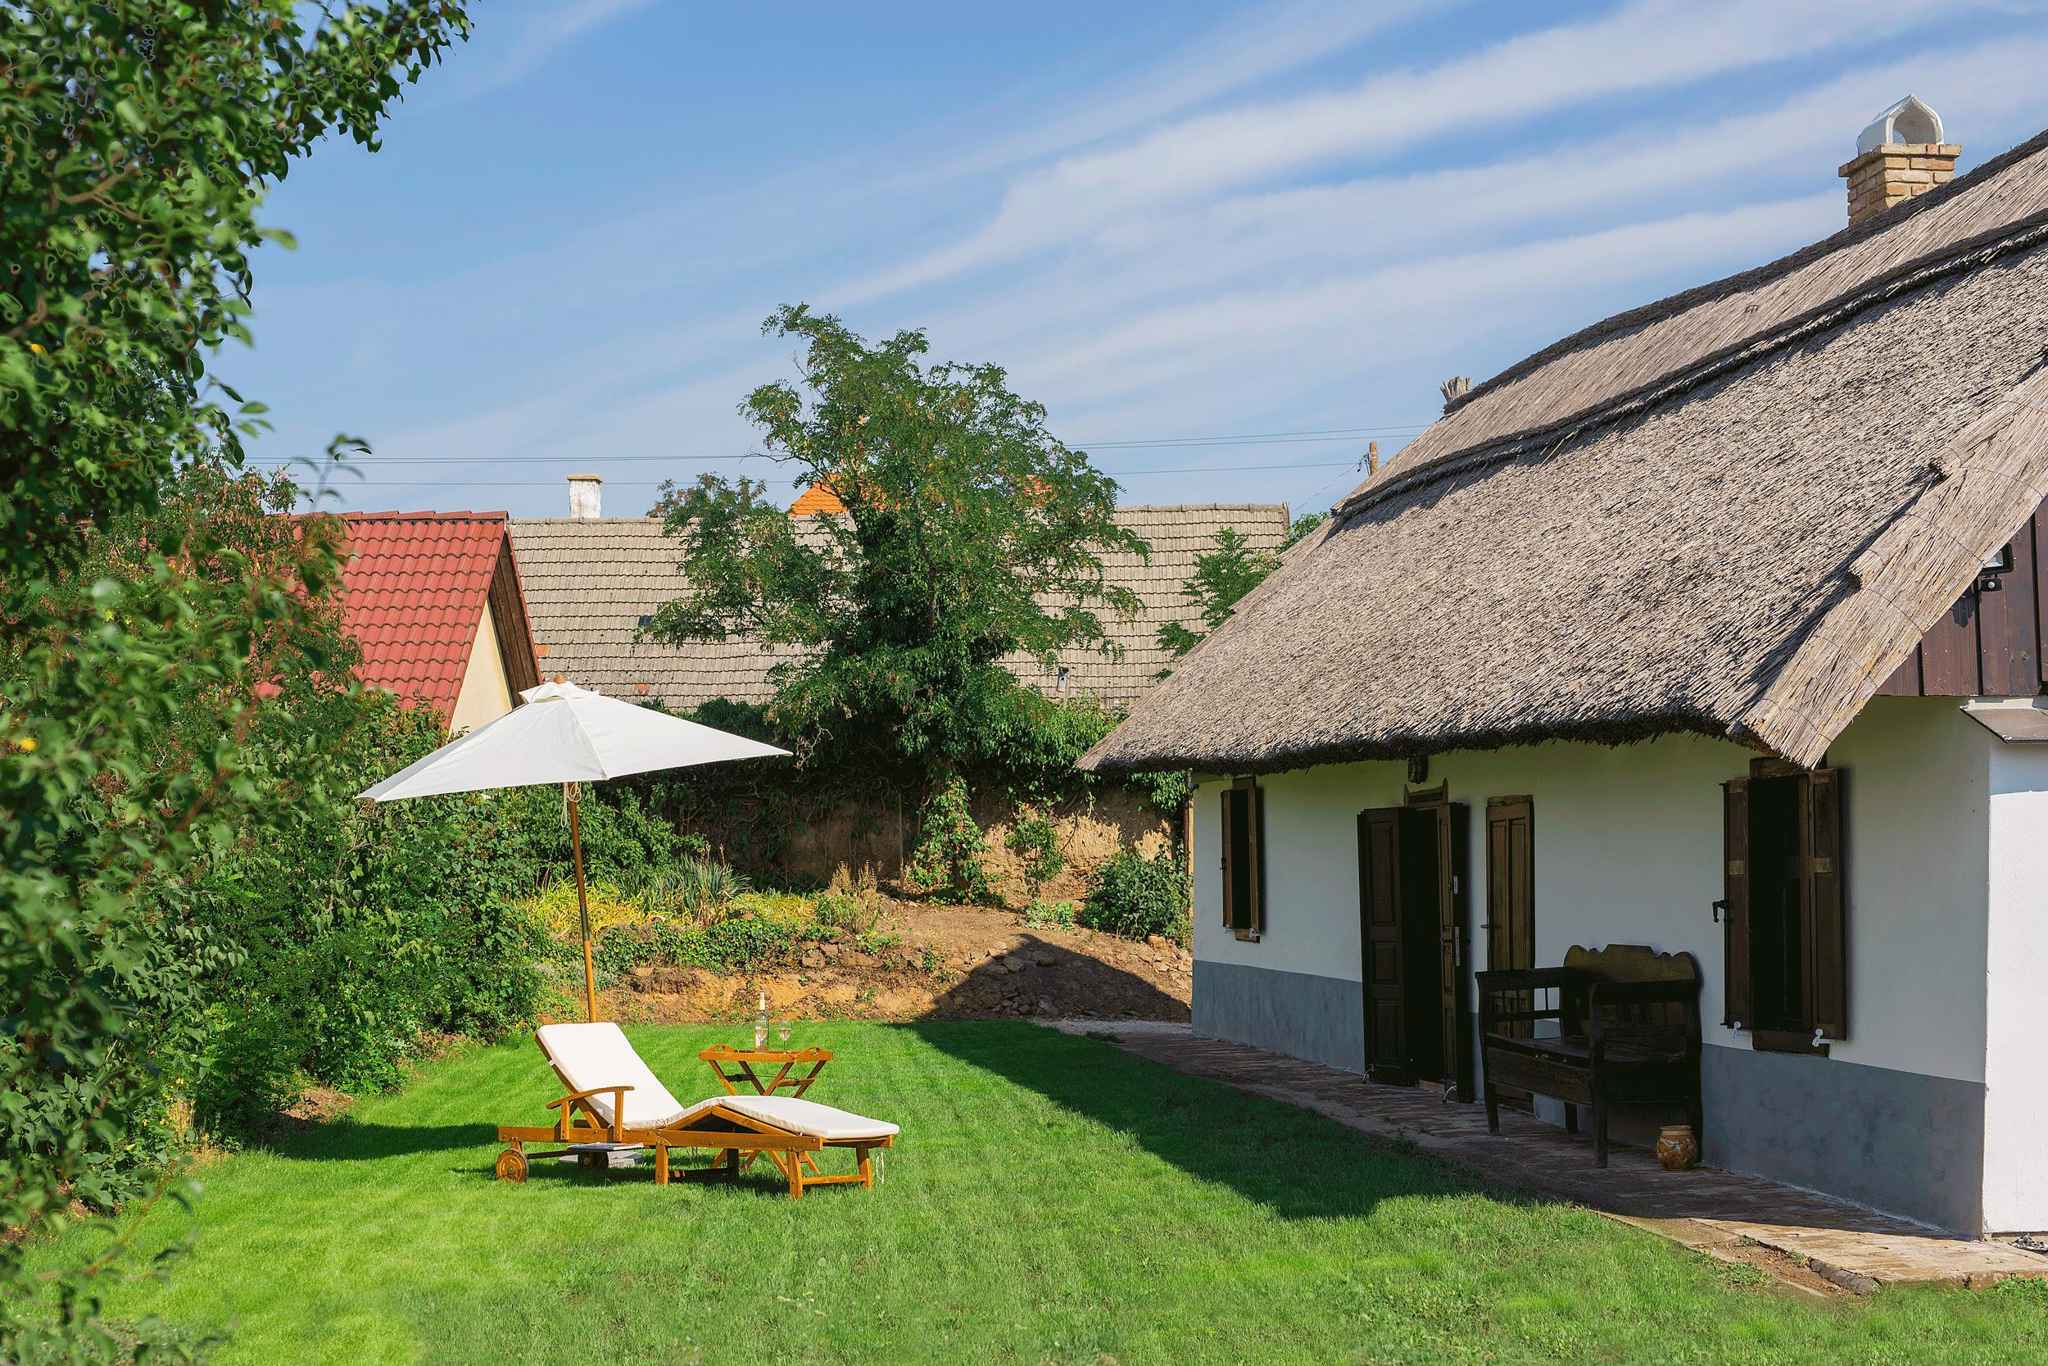 Ferienhaus mit WLAN in ruhiger Lage Ferienhaus in Ungarn